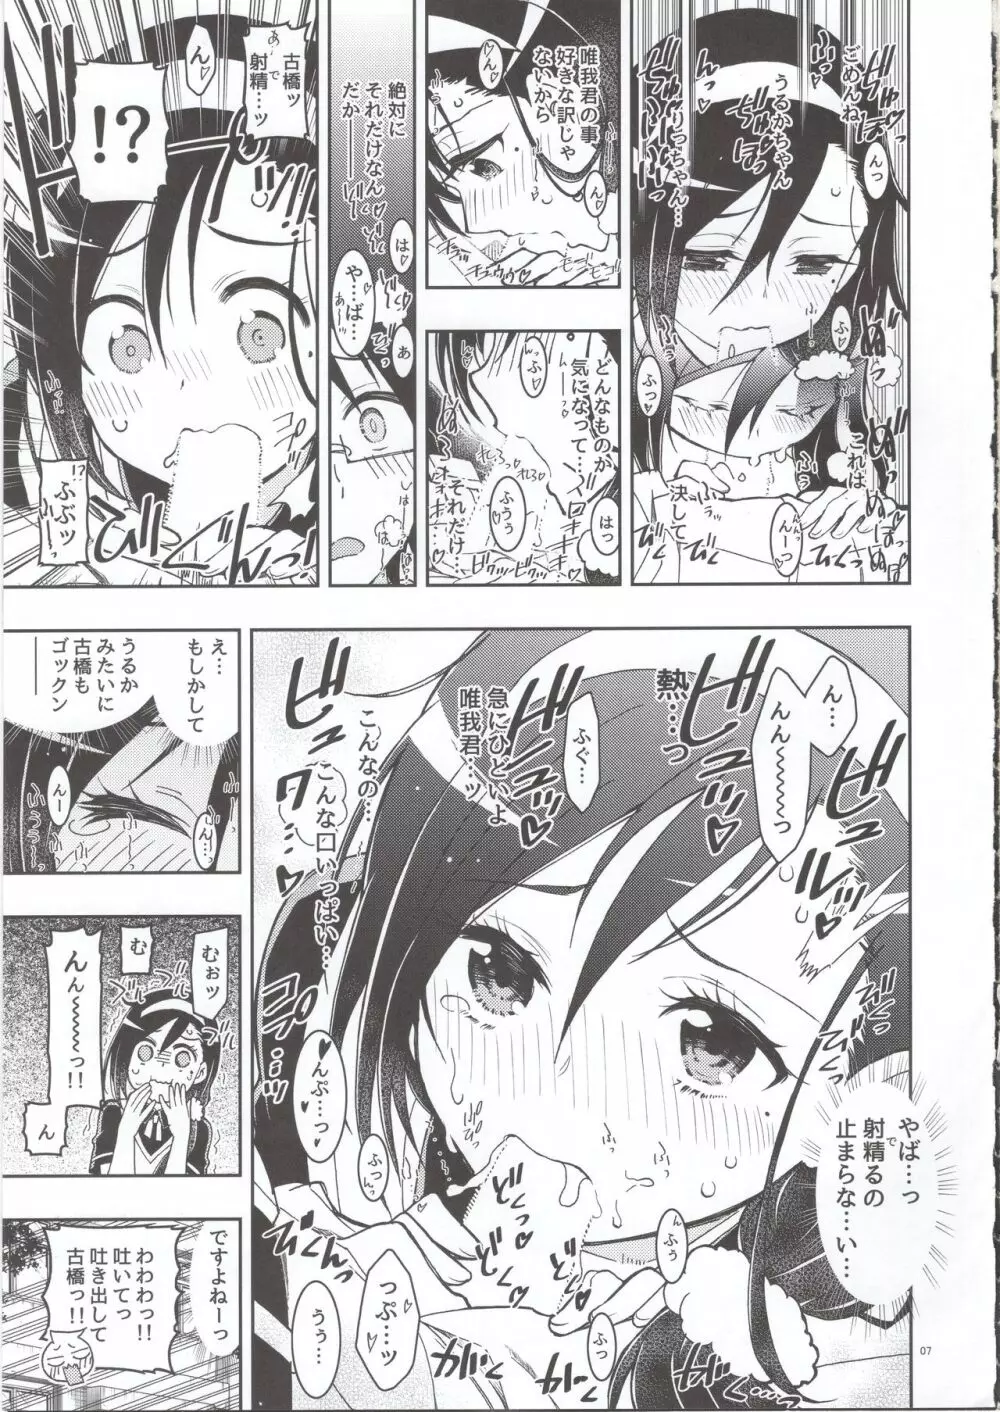 BOKUTACHIHA FUMINOMO ASUMIMO KAWAII - page6